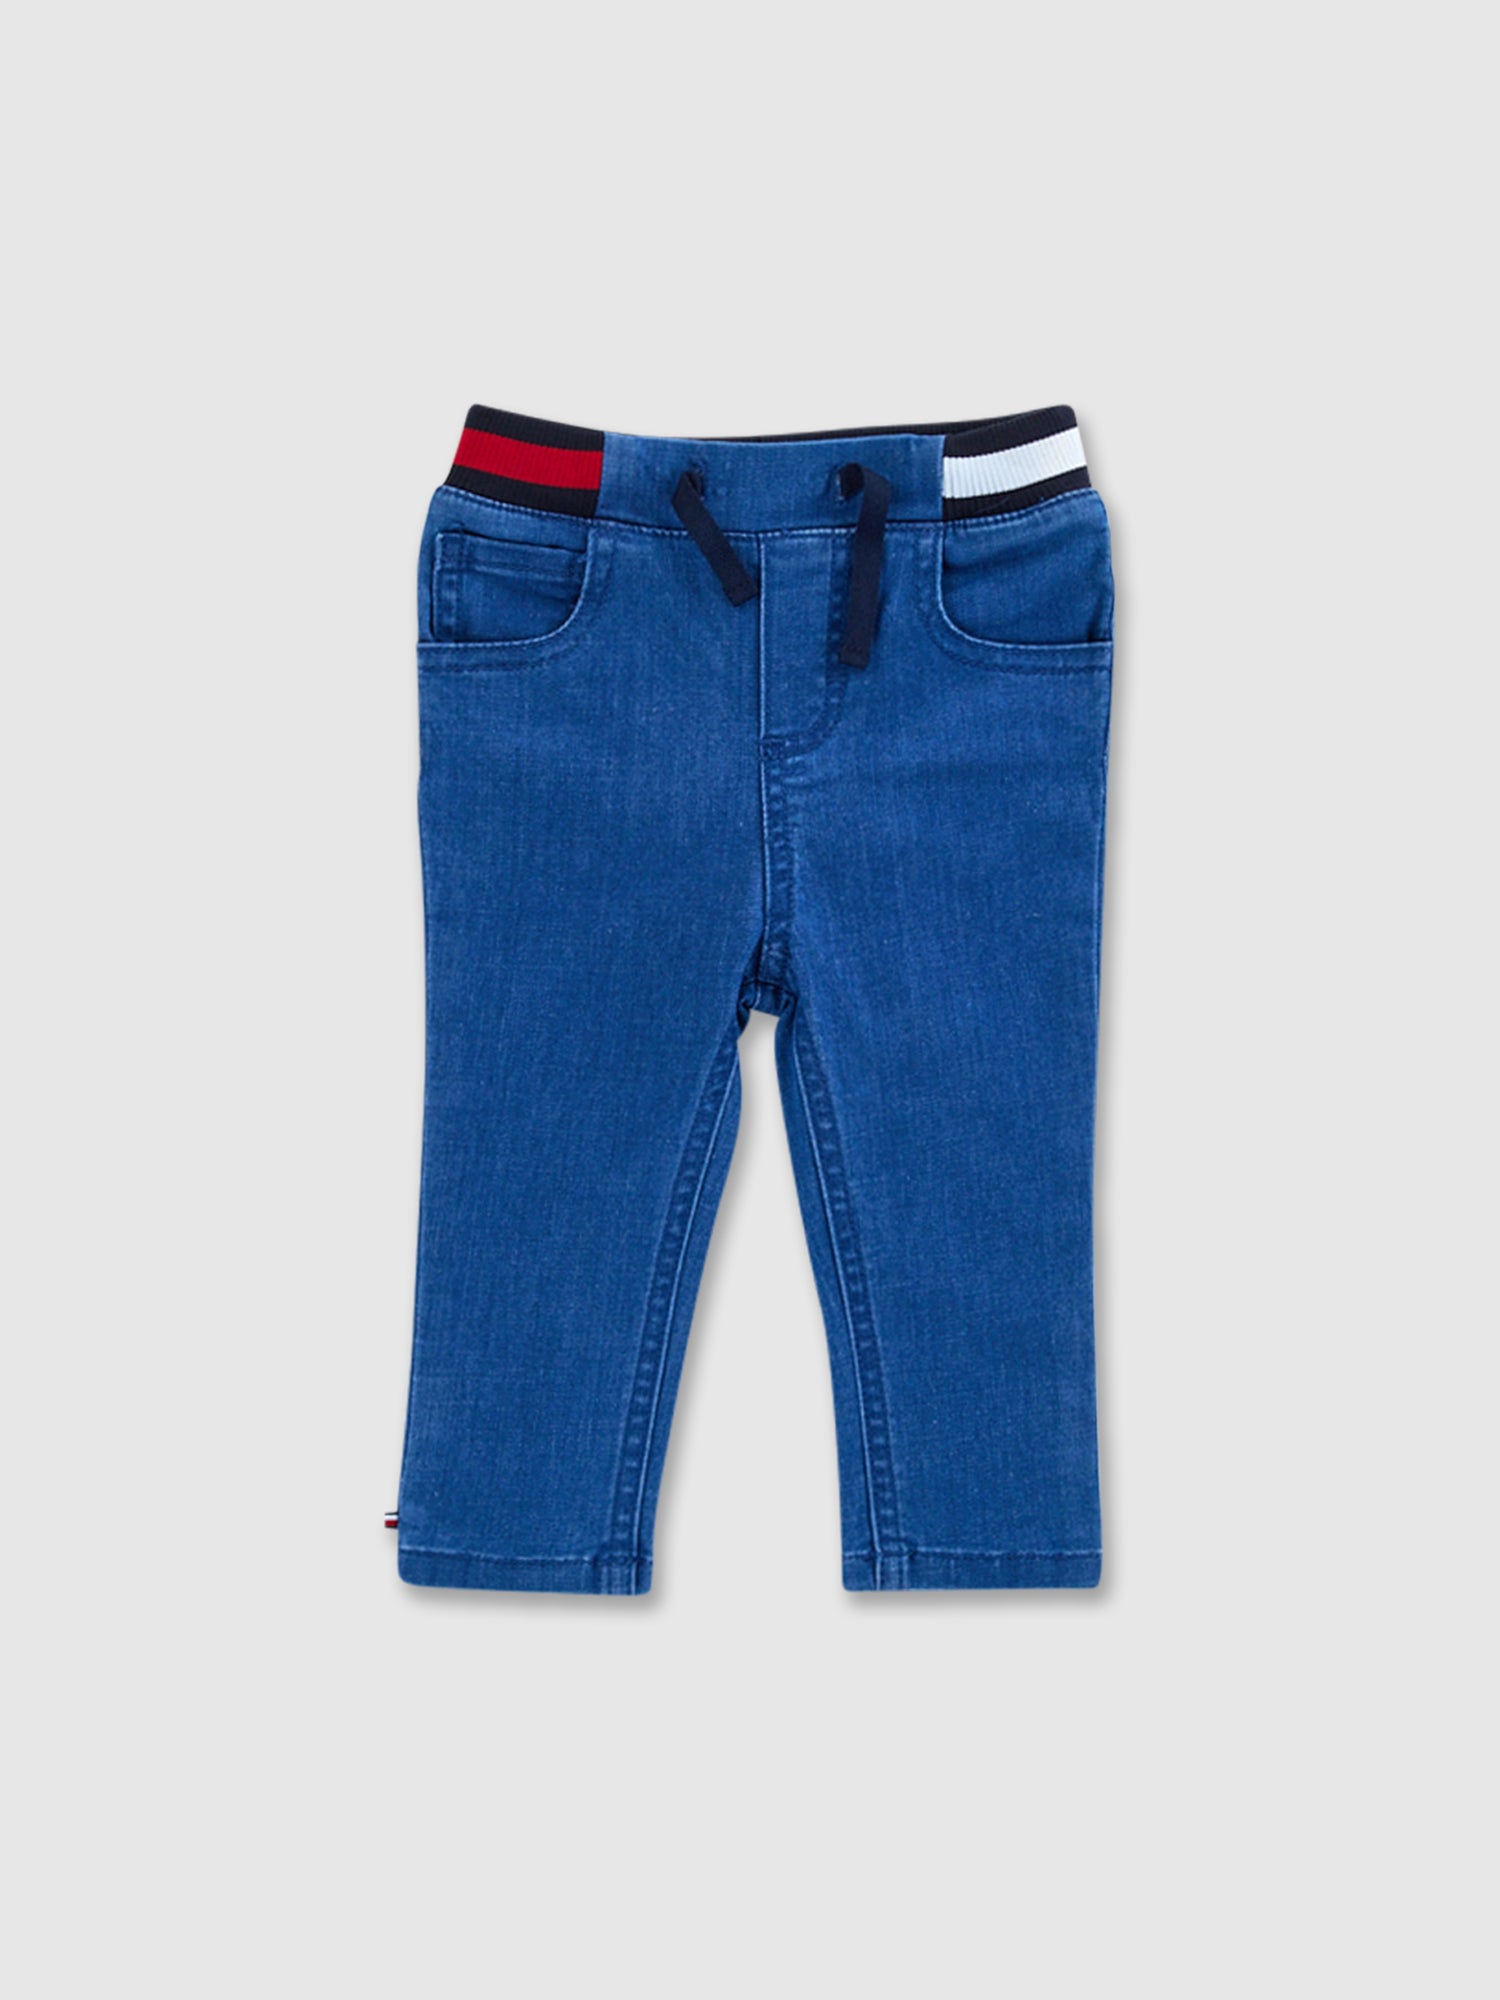 מכנסי ג'ינס ארוכים בגזרת סקיני/ יוניסקס תינוקות- Tommy Hilfiger|טומי הילפיגר